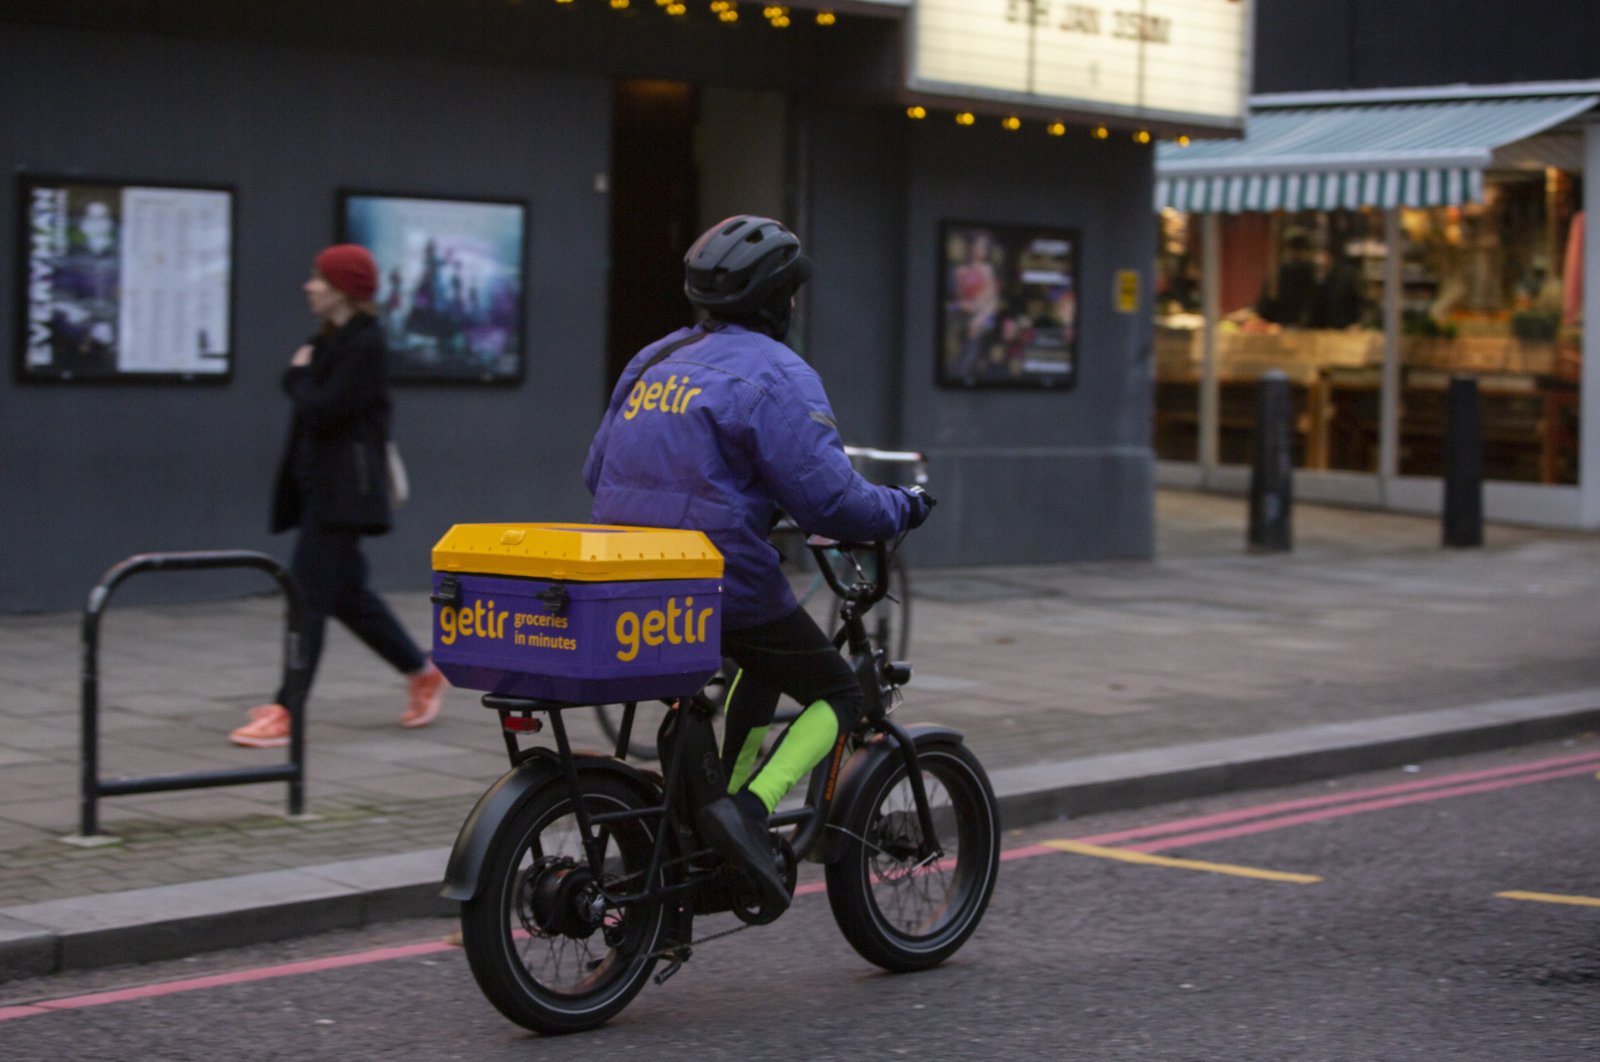 A Getir courier on a street in London, U.K., Dec. 31, 2021. (AA Photo)